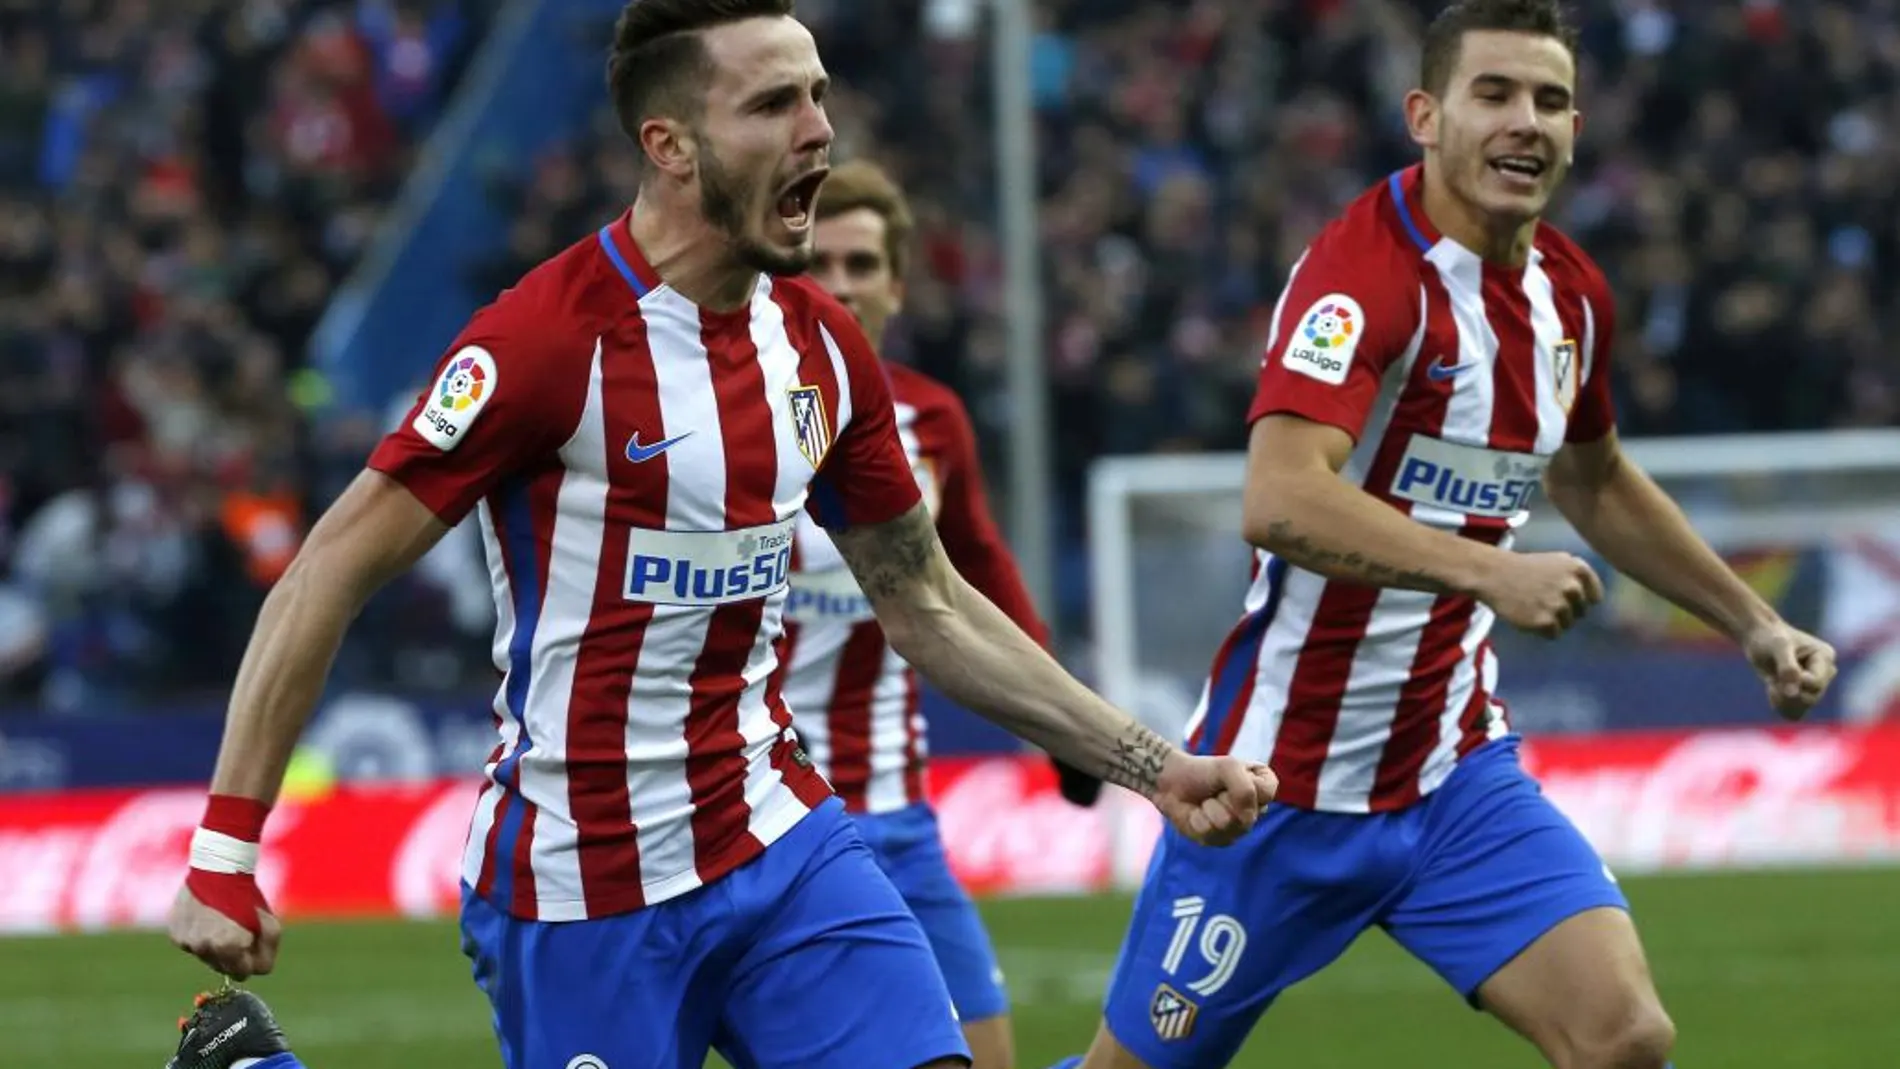 El centrocampista del Atlético de Madrid Saúl Ñíguez celebra el gol que ha marcado, el primero del equipo frente a Las Palma